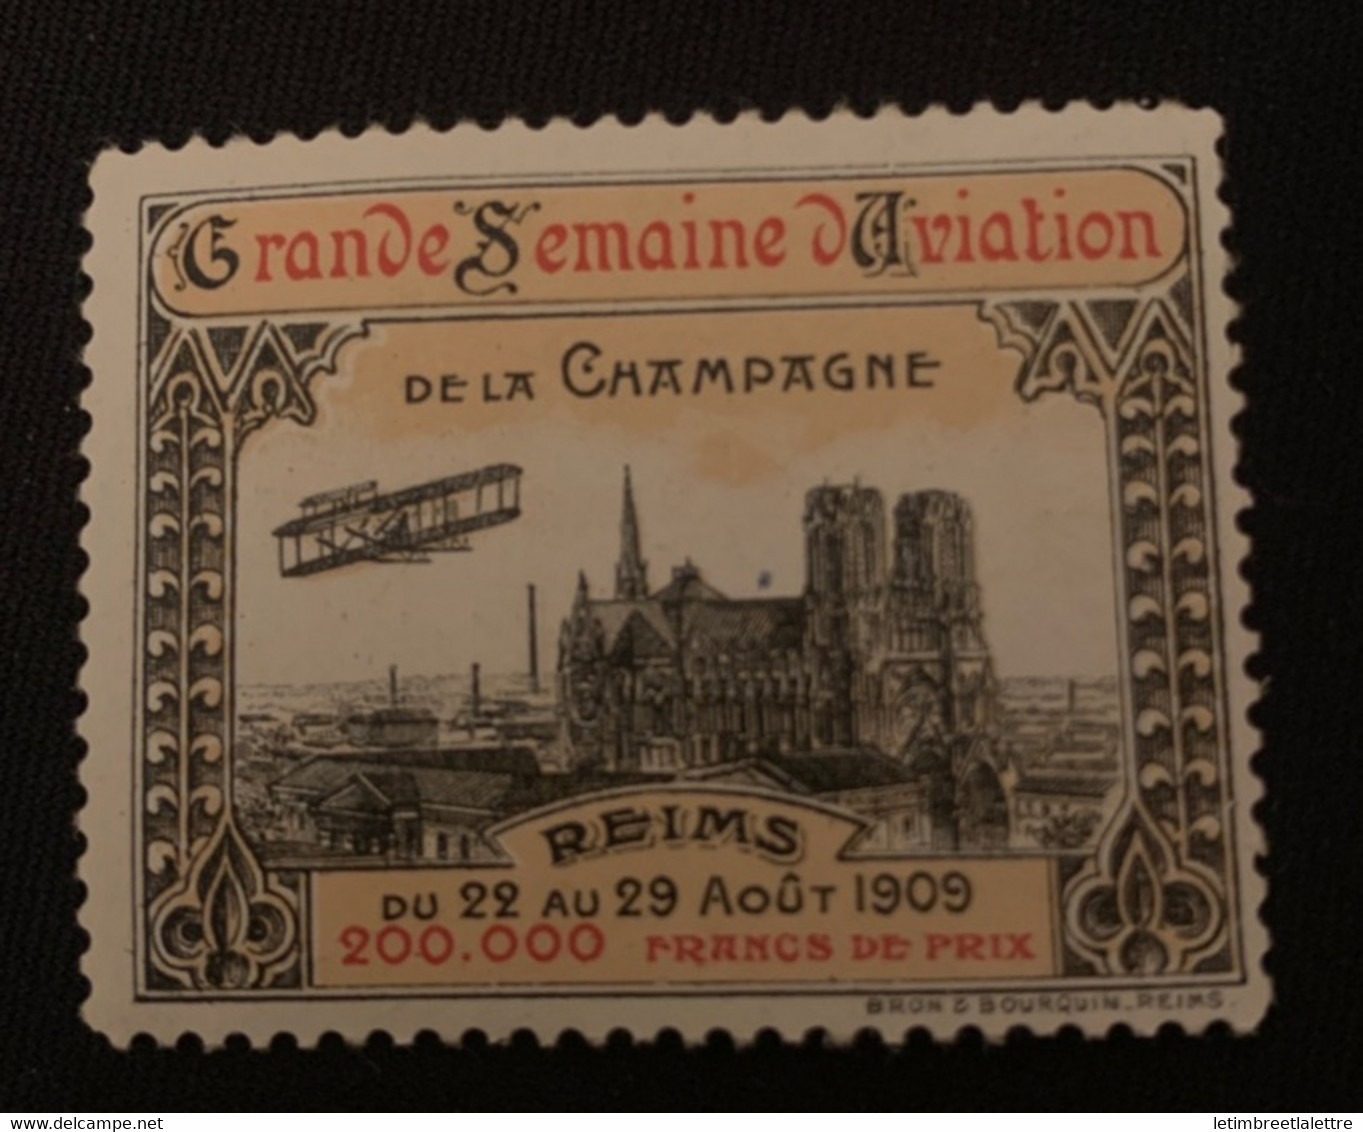 ⭐ France - Vignette - Grande Semaine D’aviation De La Campagne - Reims 1909 ⭐ - Luftfahrt